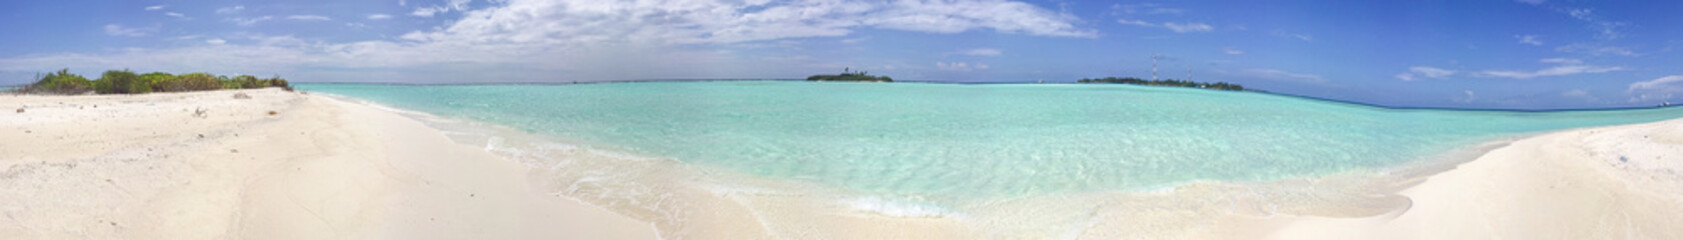 Panoramic view of beautiful maldivian beach